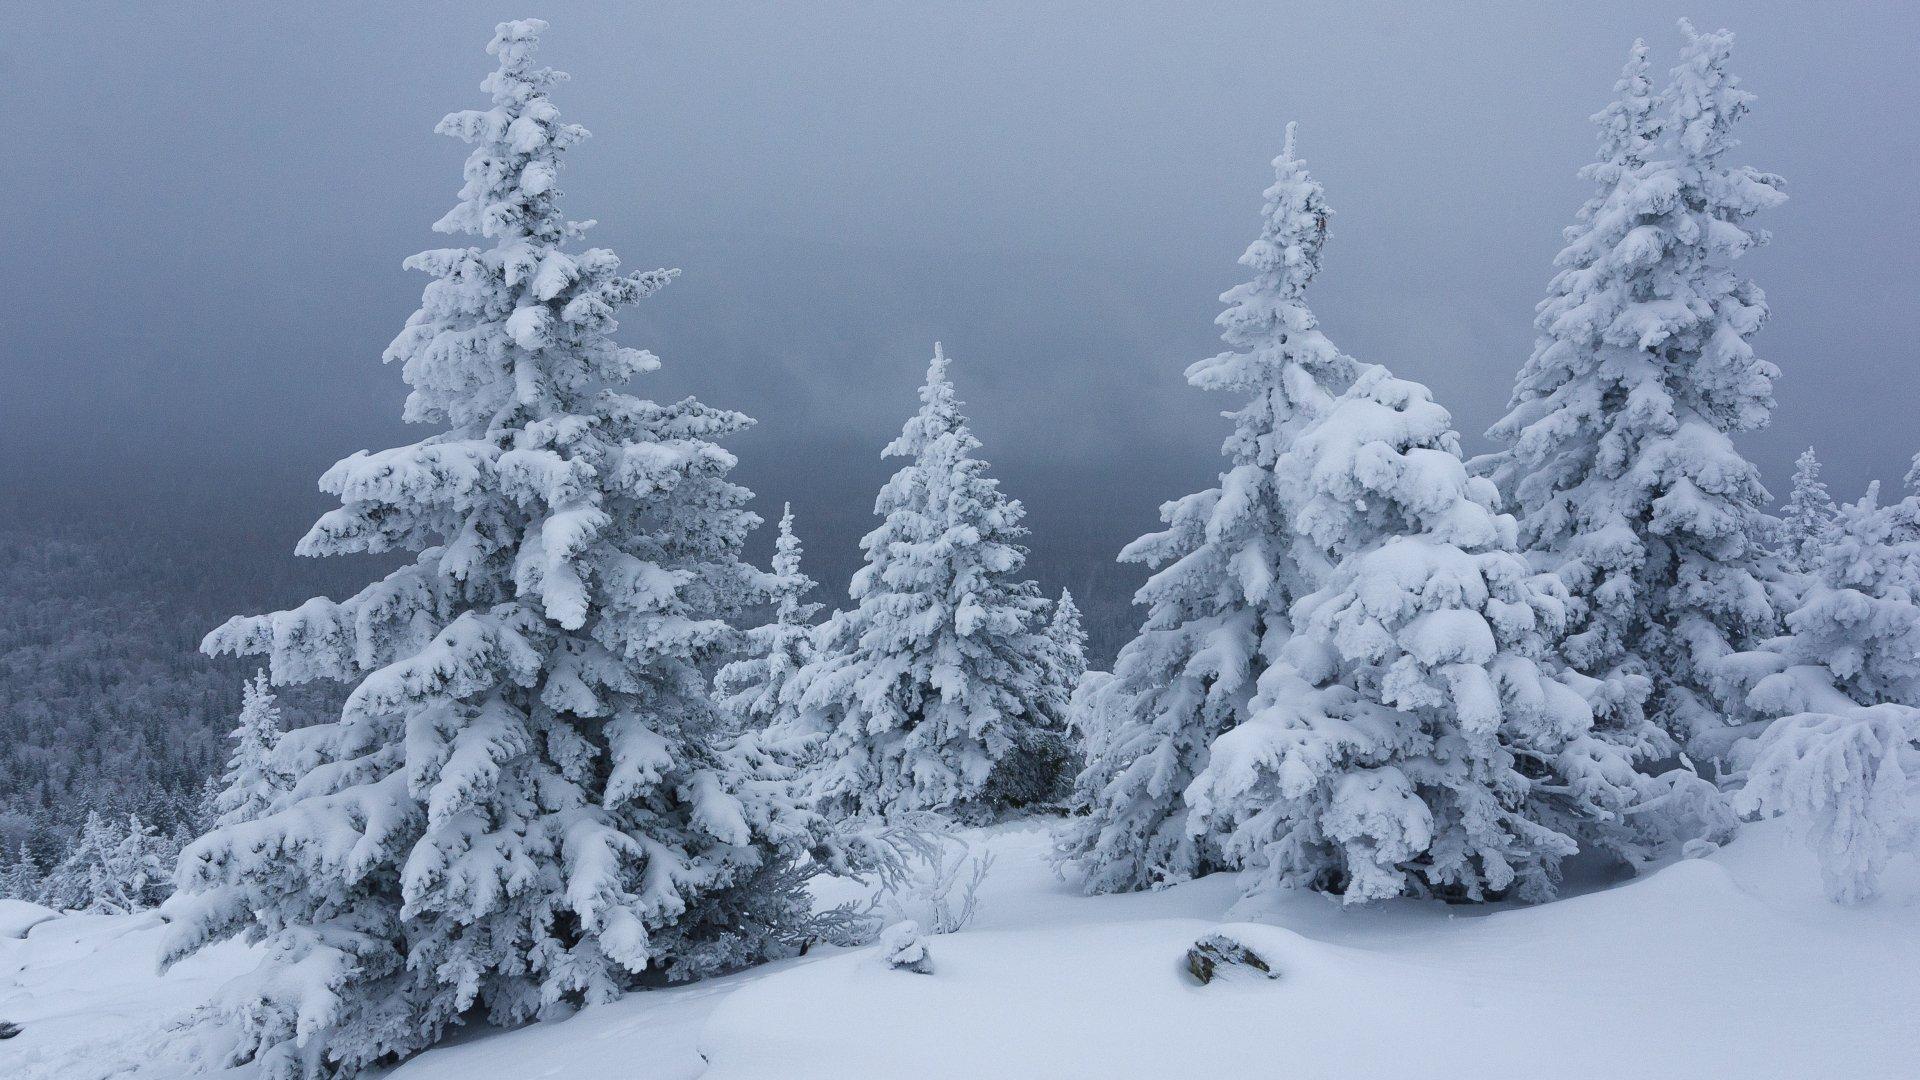 Обои на рабочий стол Зимний пейзаж. Деревья покрытые снегом, на фоне  голубого неба, обои для рабочего стола, скачать обои, обои бесплатно